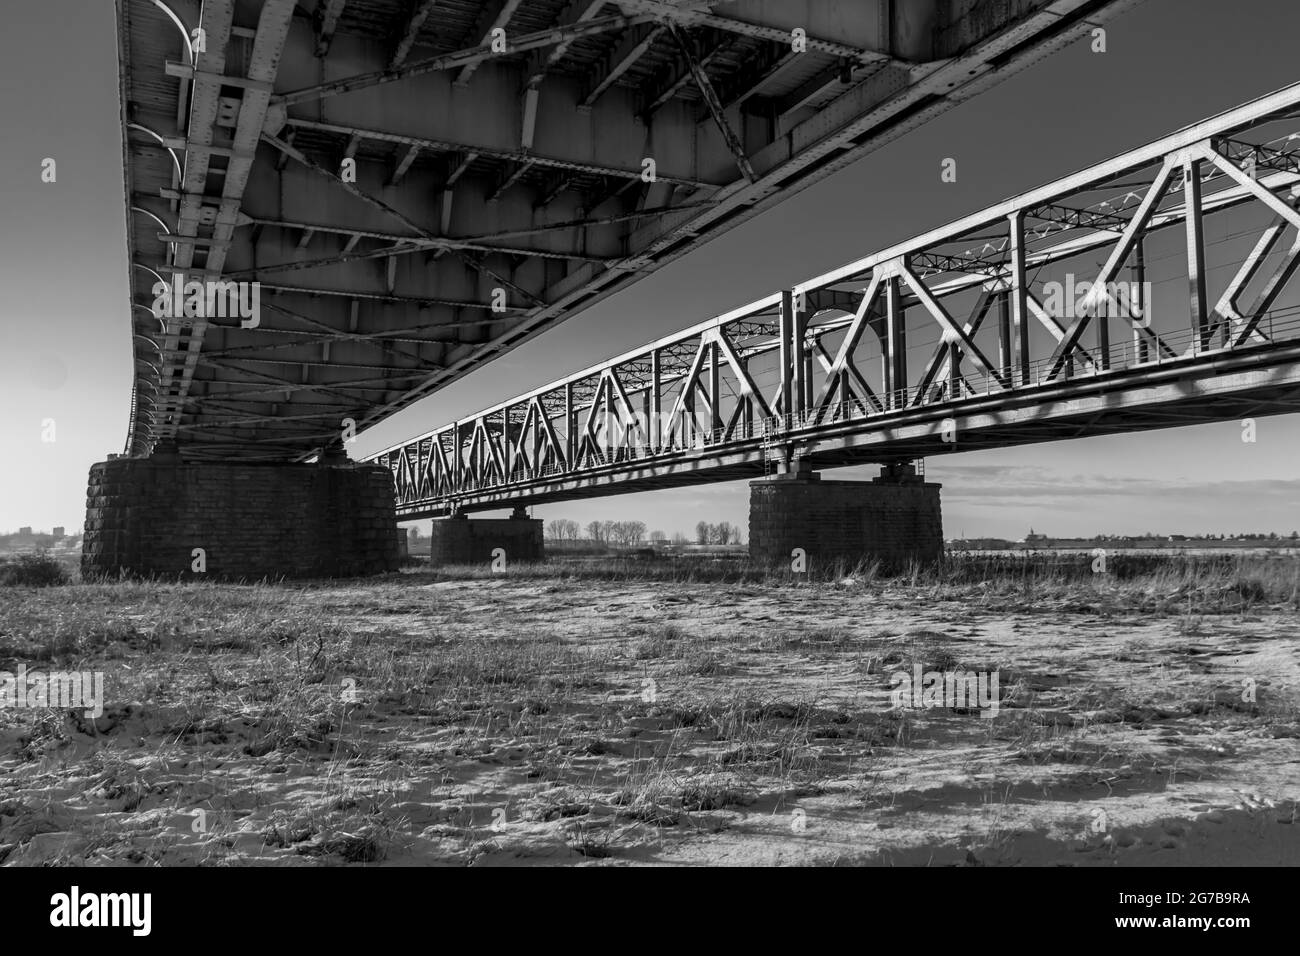 The 'Lisewski' or 'Tczewski' bridge over the Vistula River. B&W, bottom view, Tczew, Dirschau, Pomerania, Poland Stock Photo